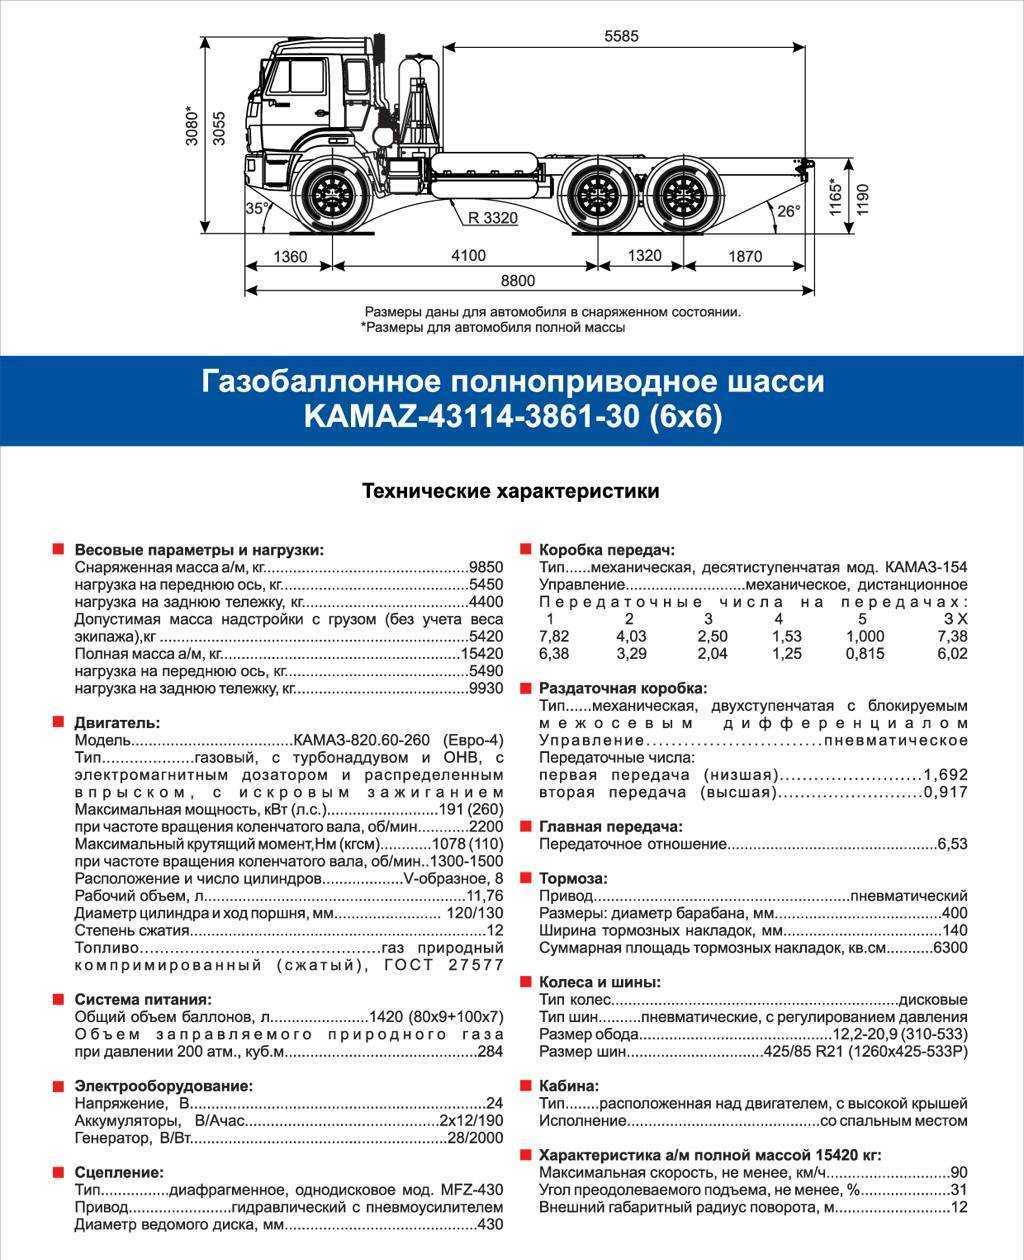 Камаз-65225 технические характеристики, двигатель и кабина, расход топлива, размеры и вес